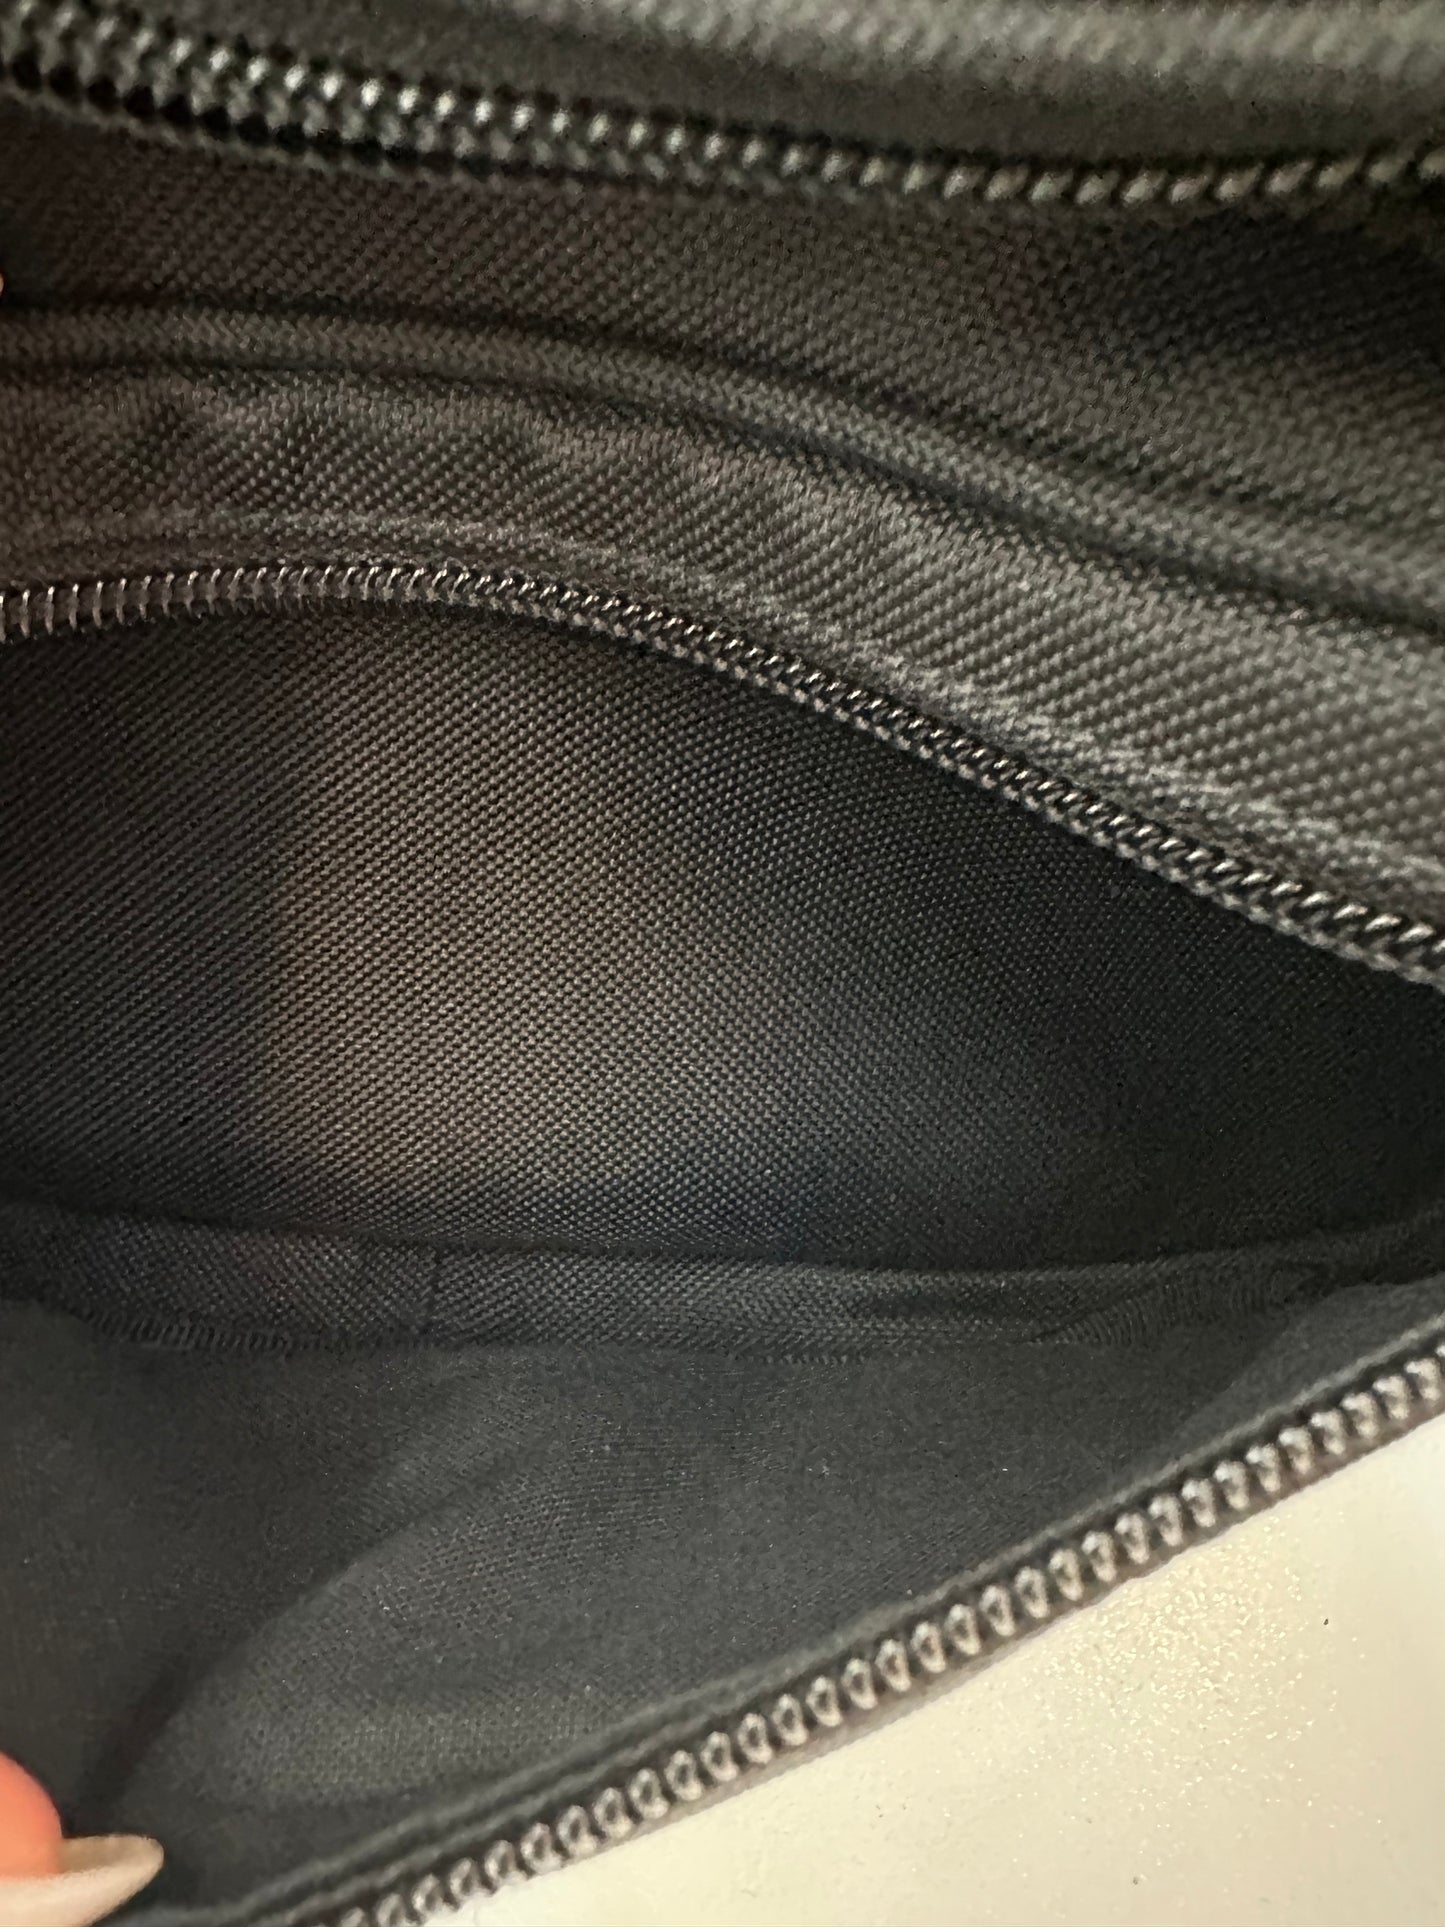 Balenciaga Black ‘New York’ Canvas Bum Bag